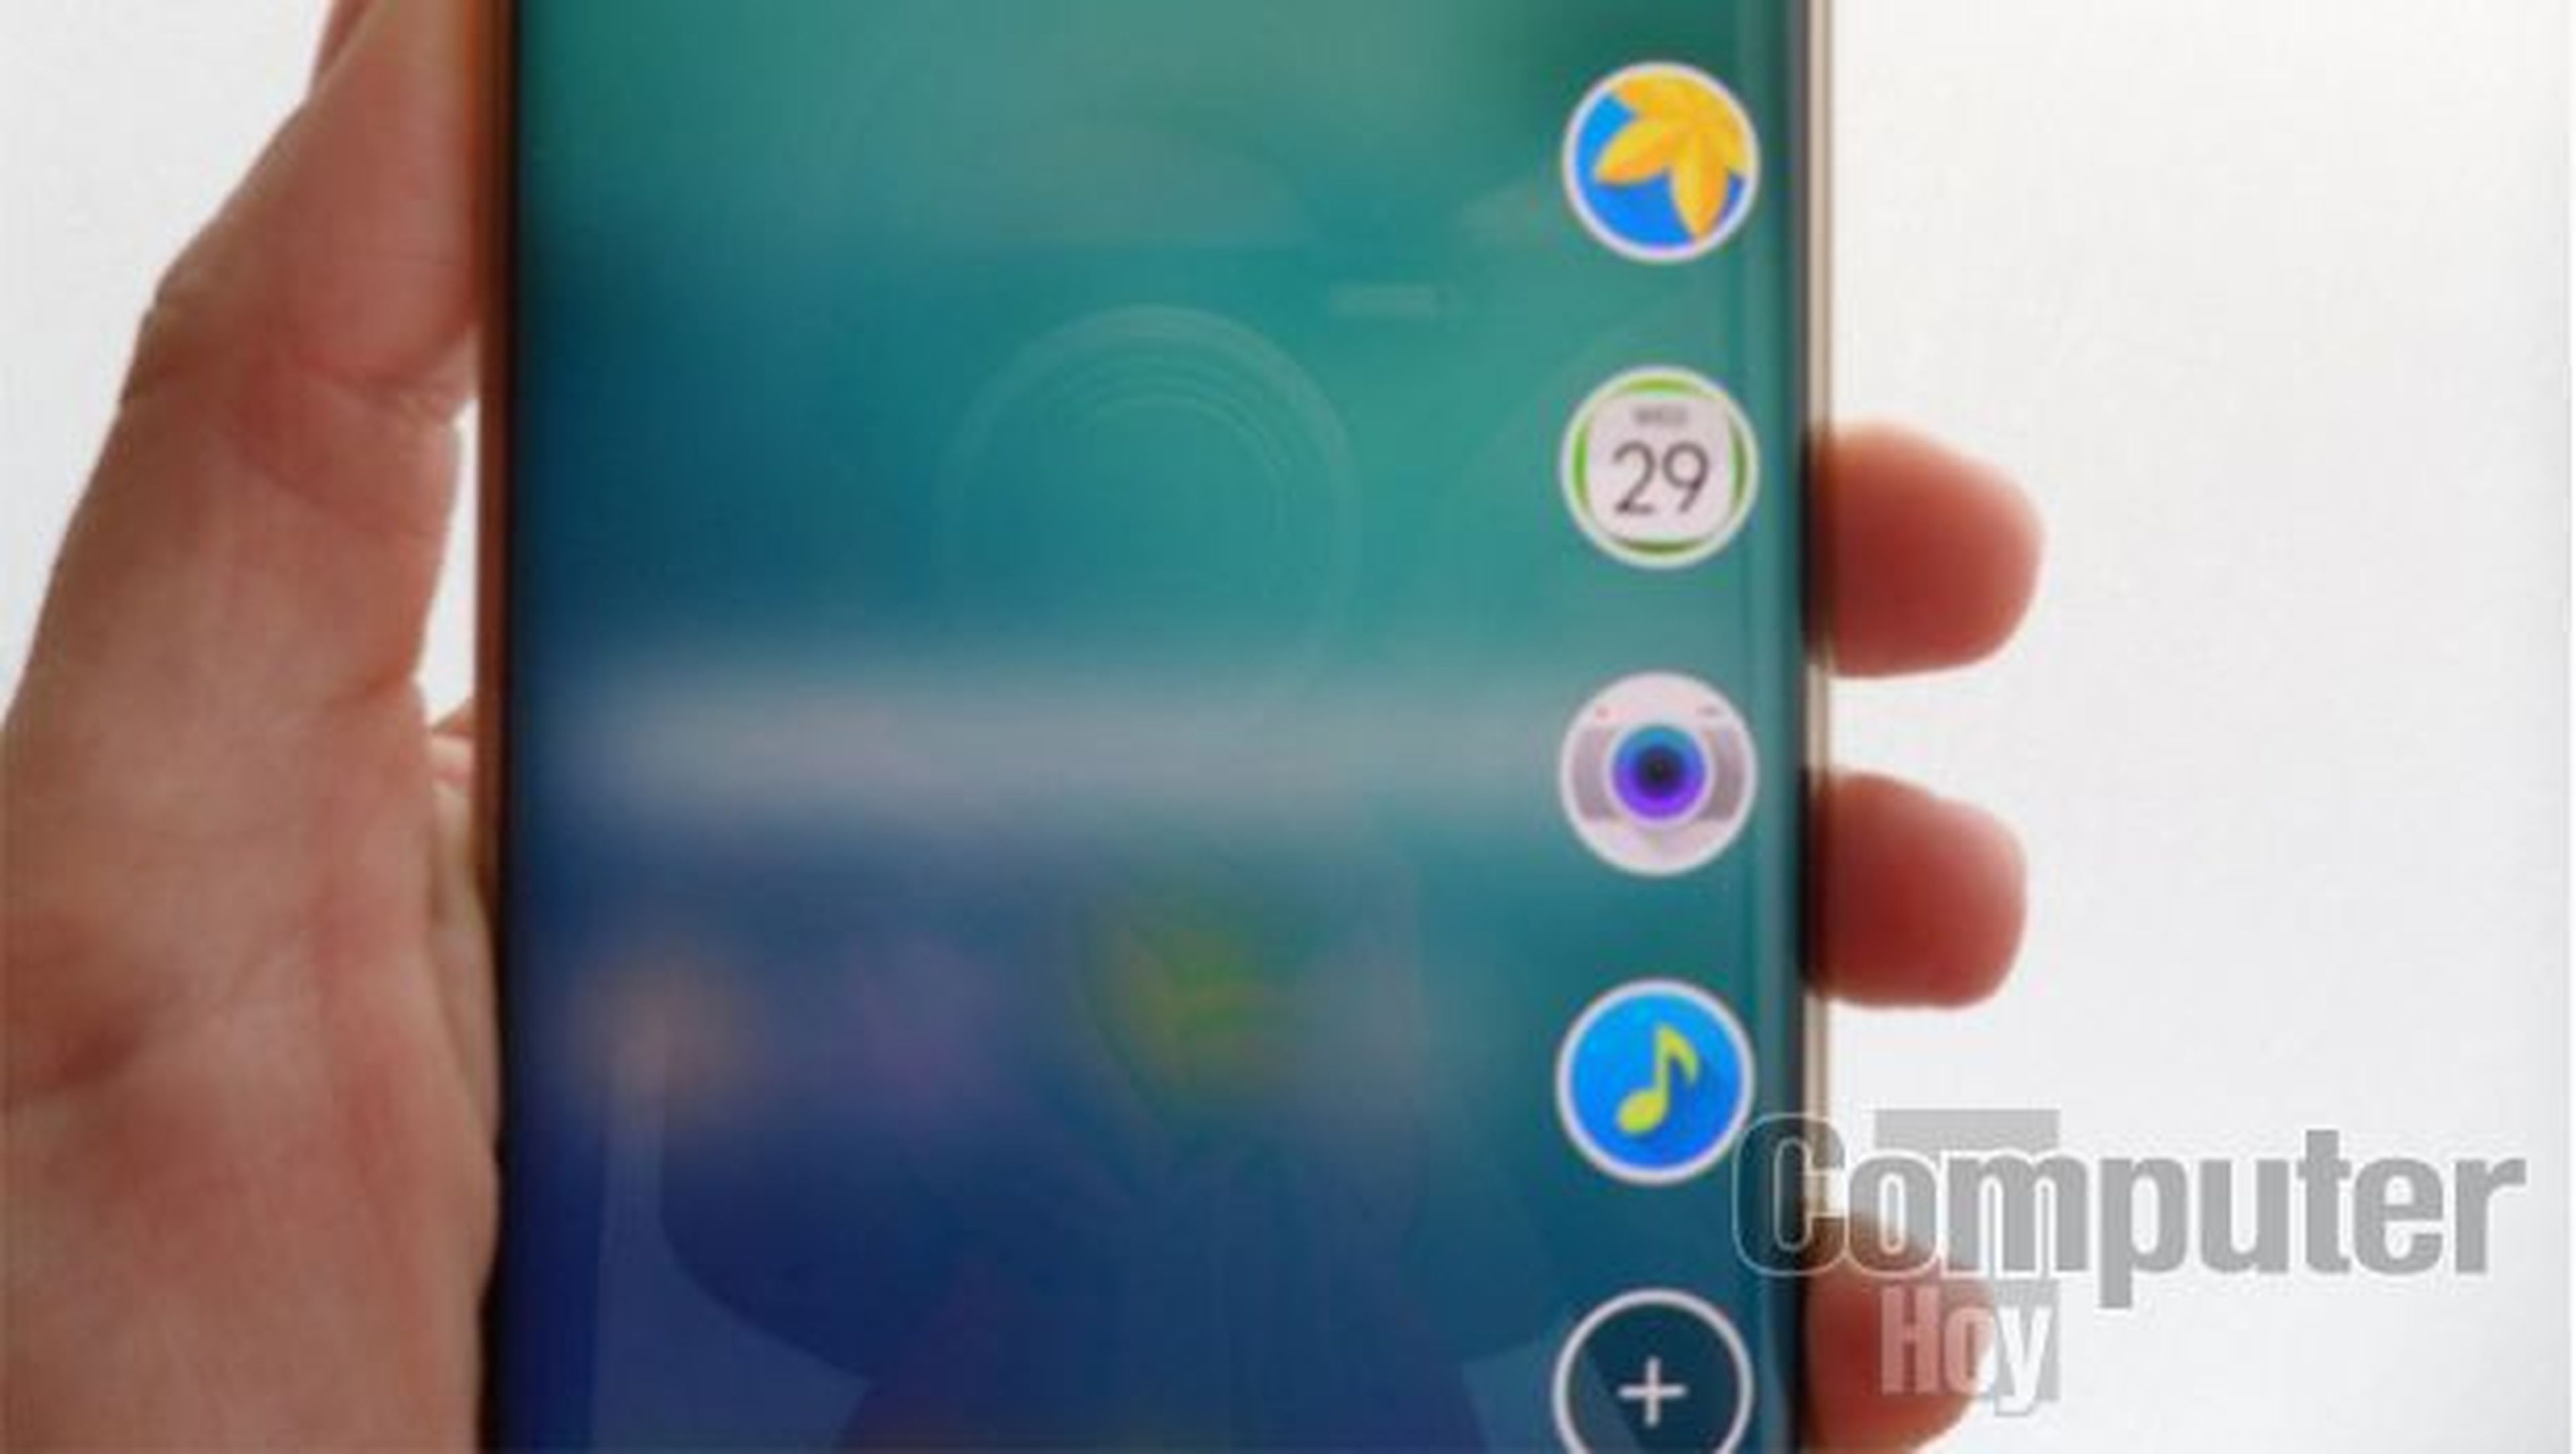 Samsung Galaxy S6 Edge+, toma de contacto y primeras impresiones